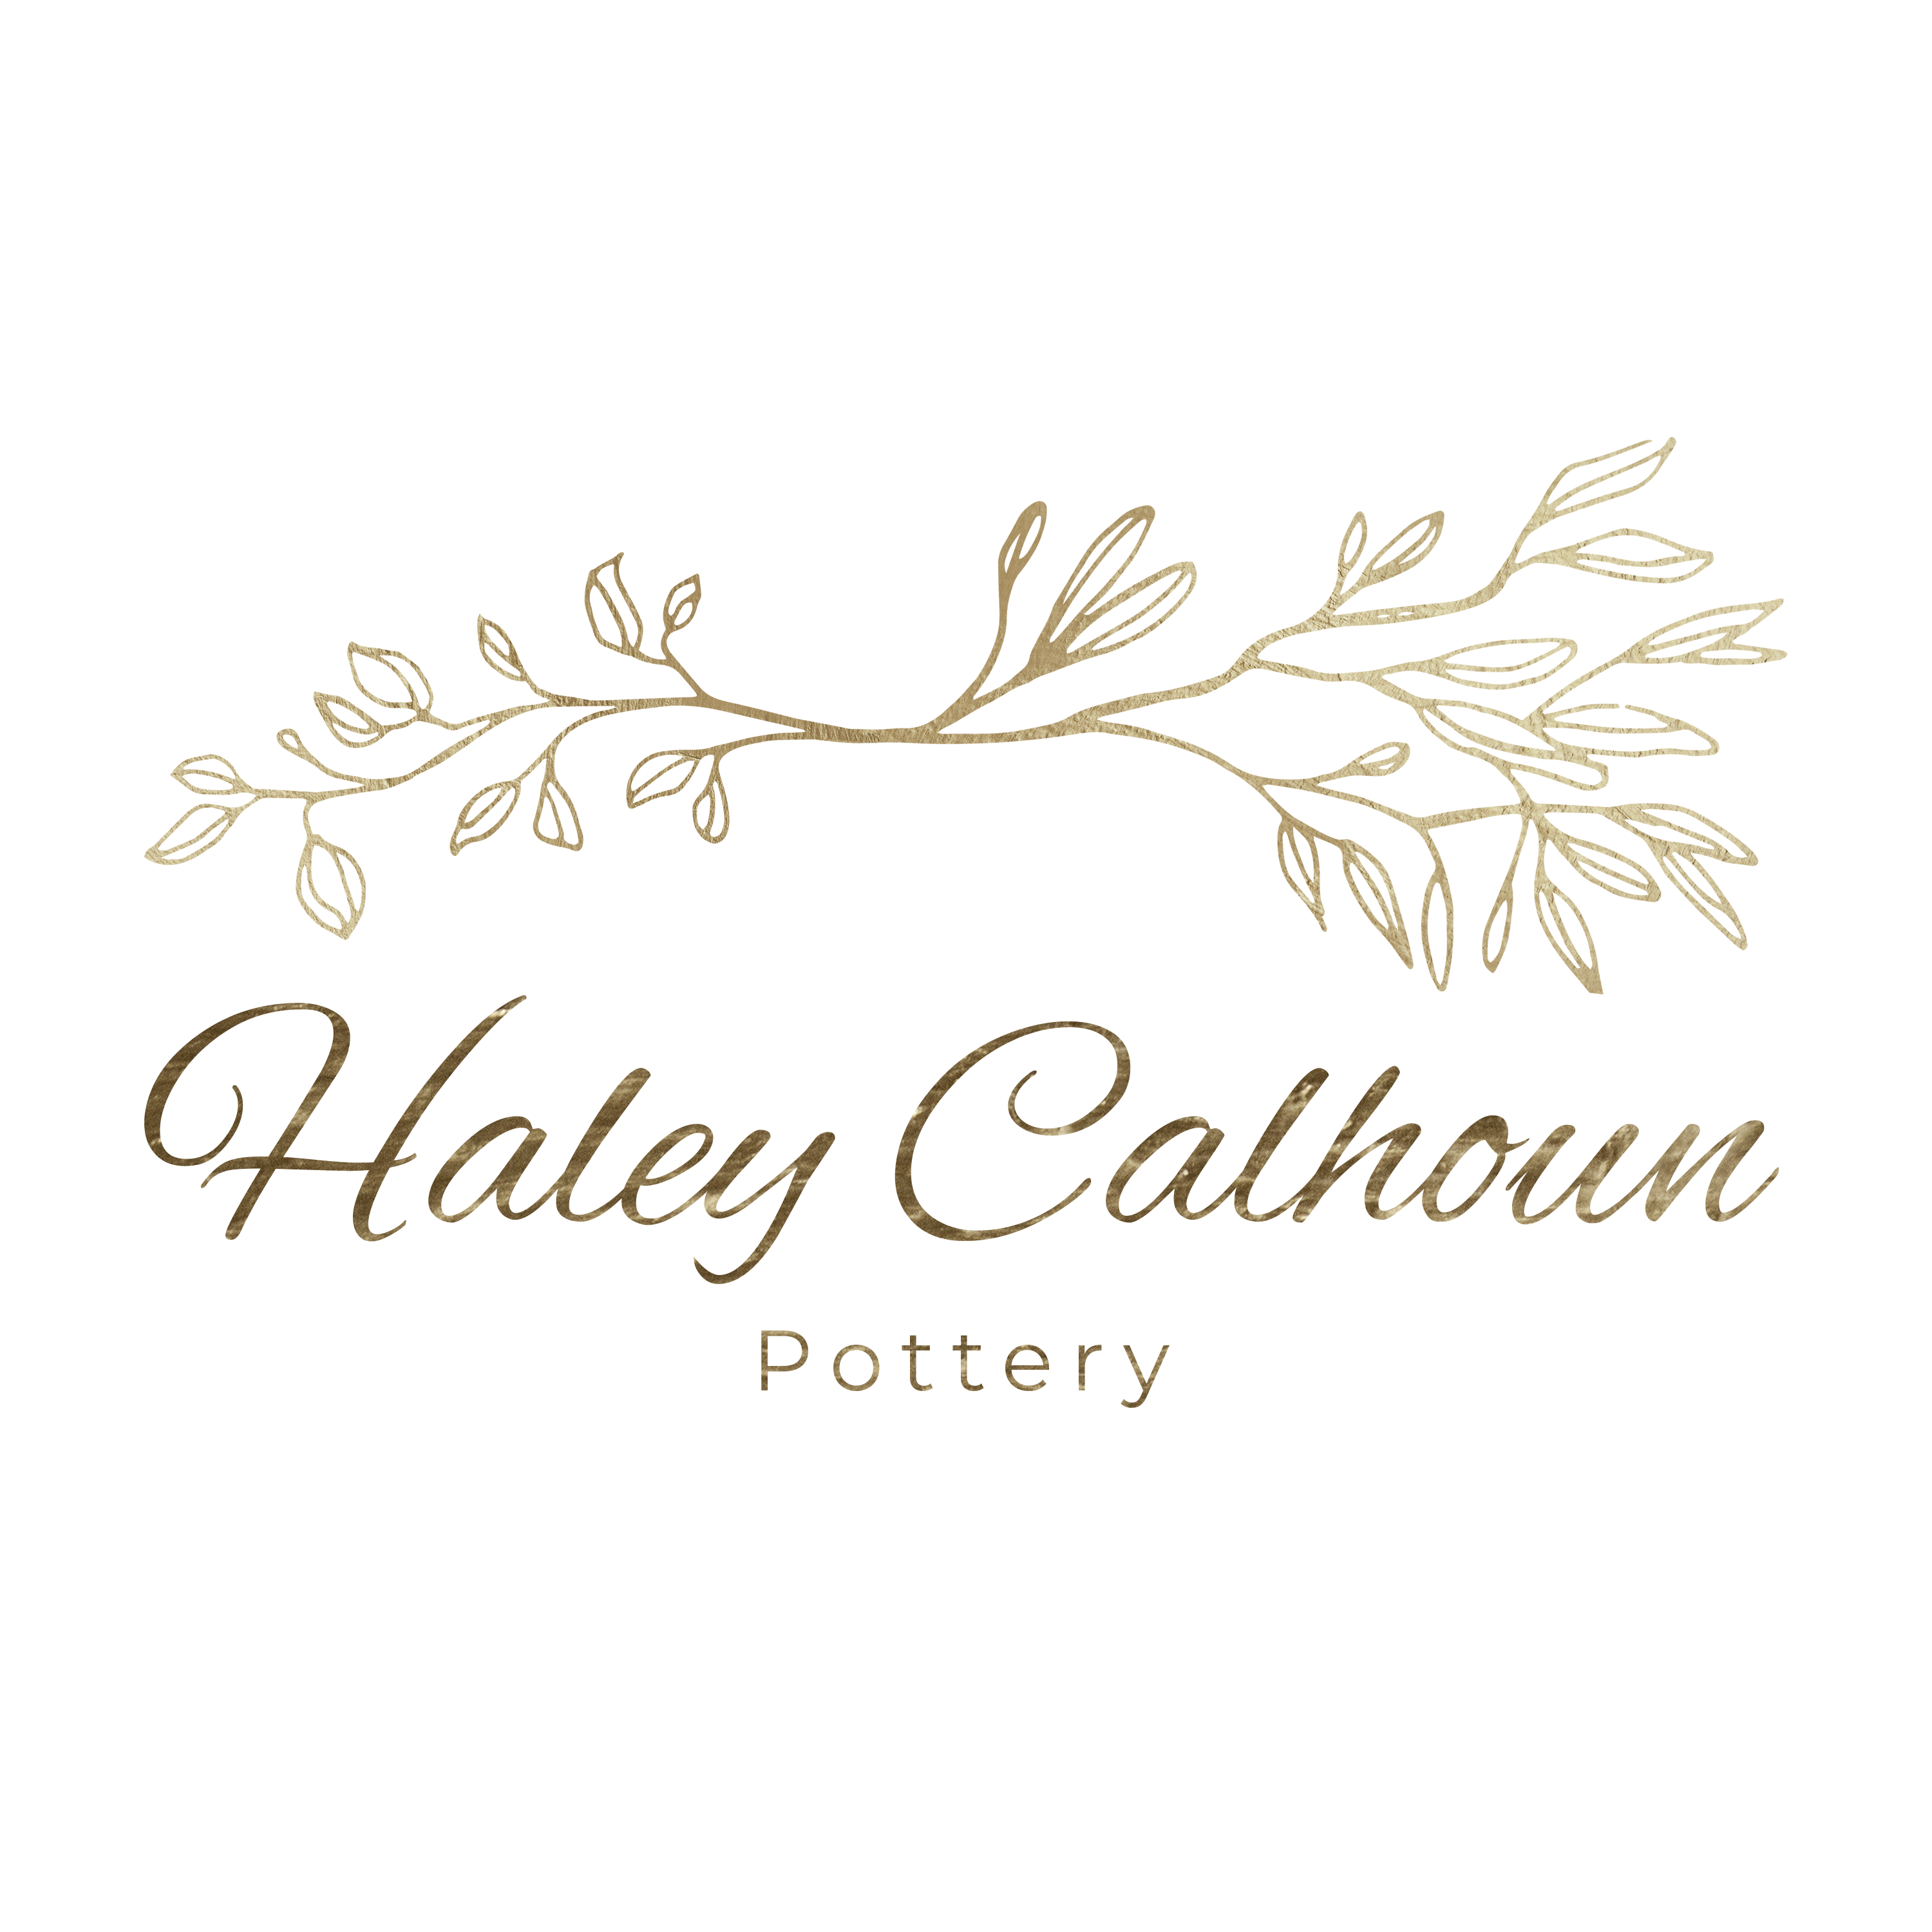 Haley Calhoun Pottery